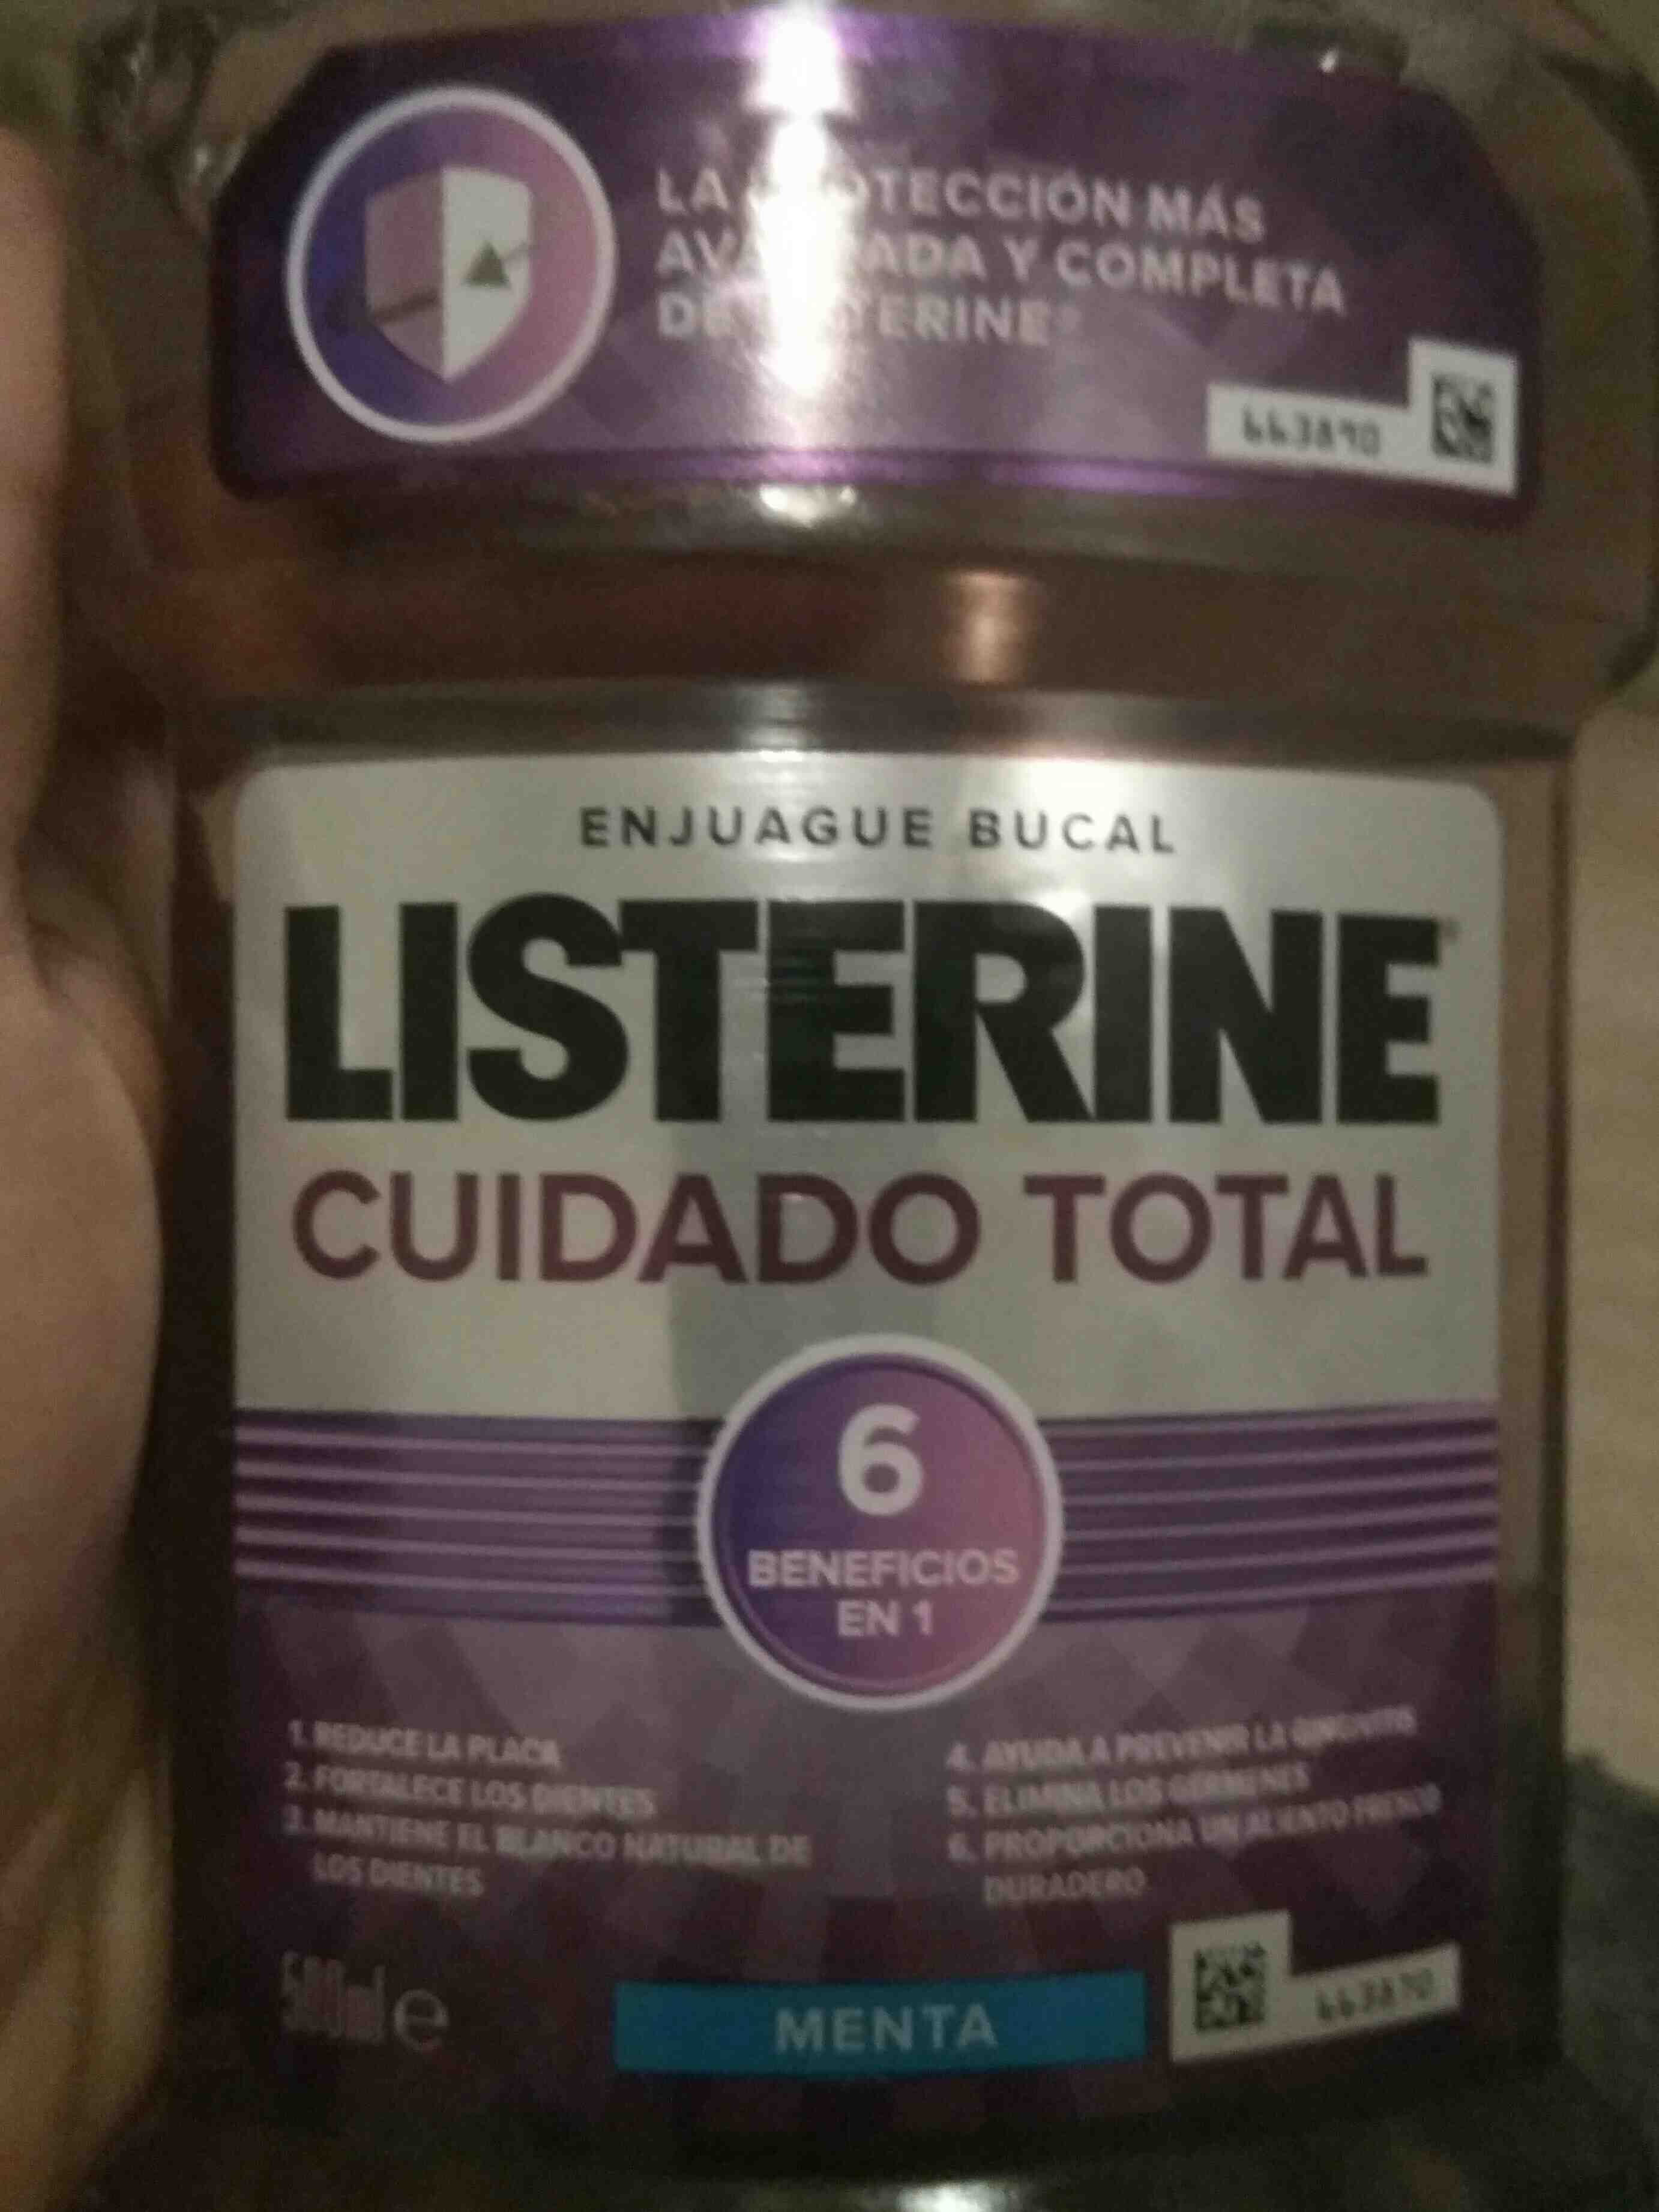 Listerine cuidado total - Ingrédients - en